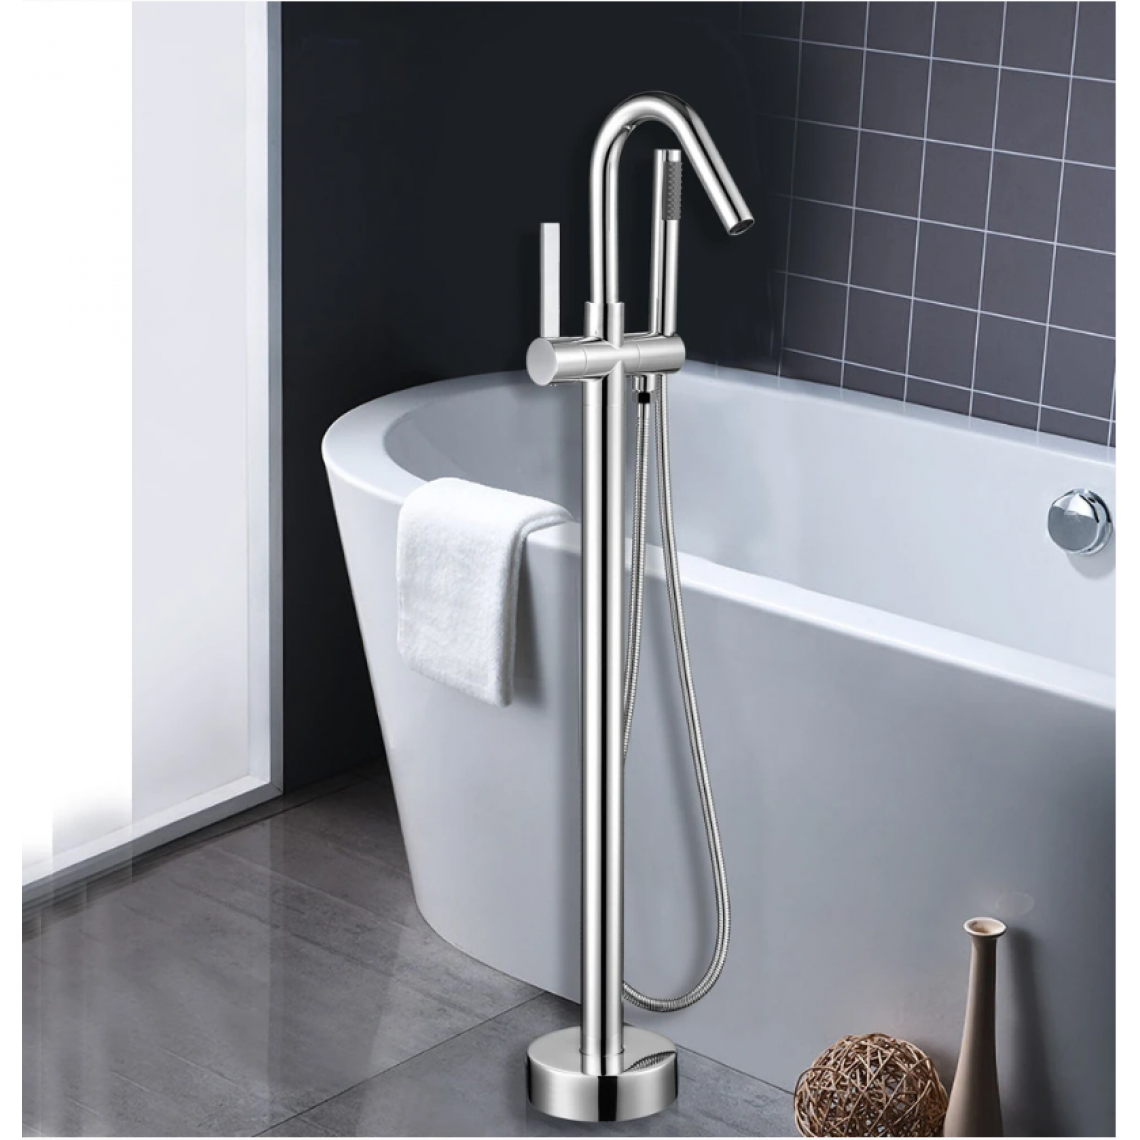 Kroos - Mitigeur baignoire de luxe sur pied avec douchette et flexible de douche - Mitigeur douche